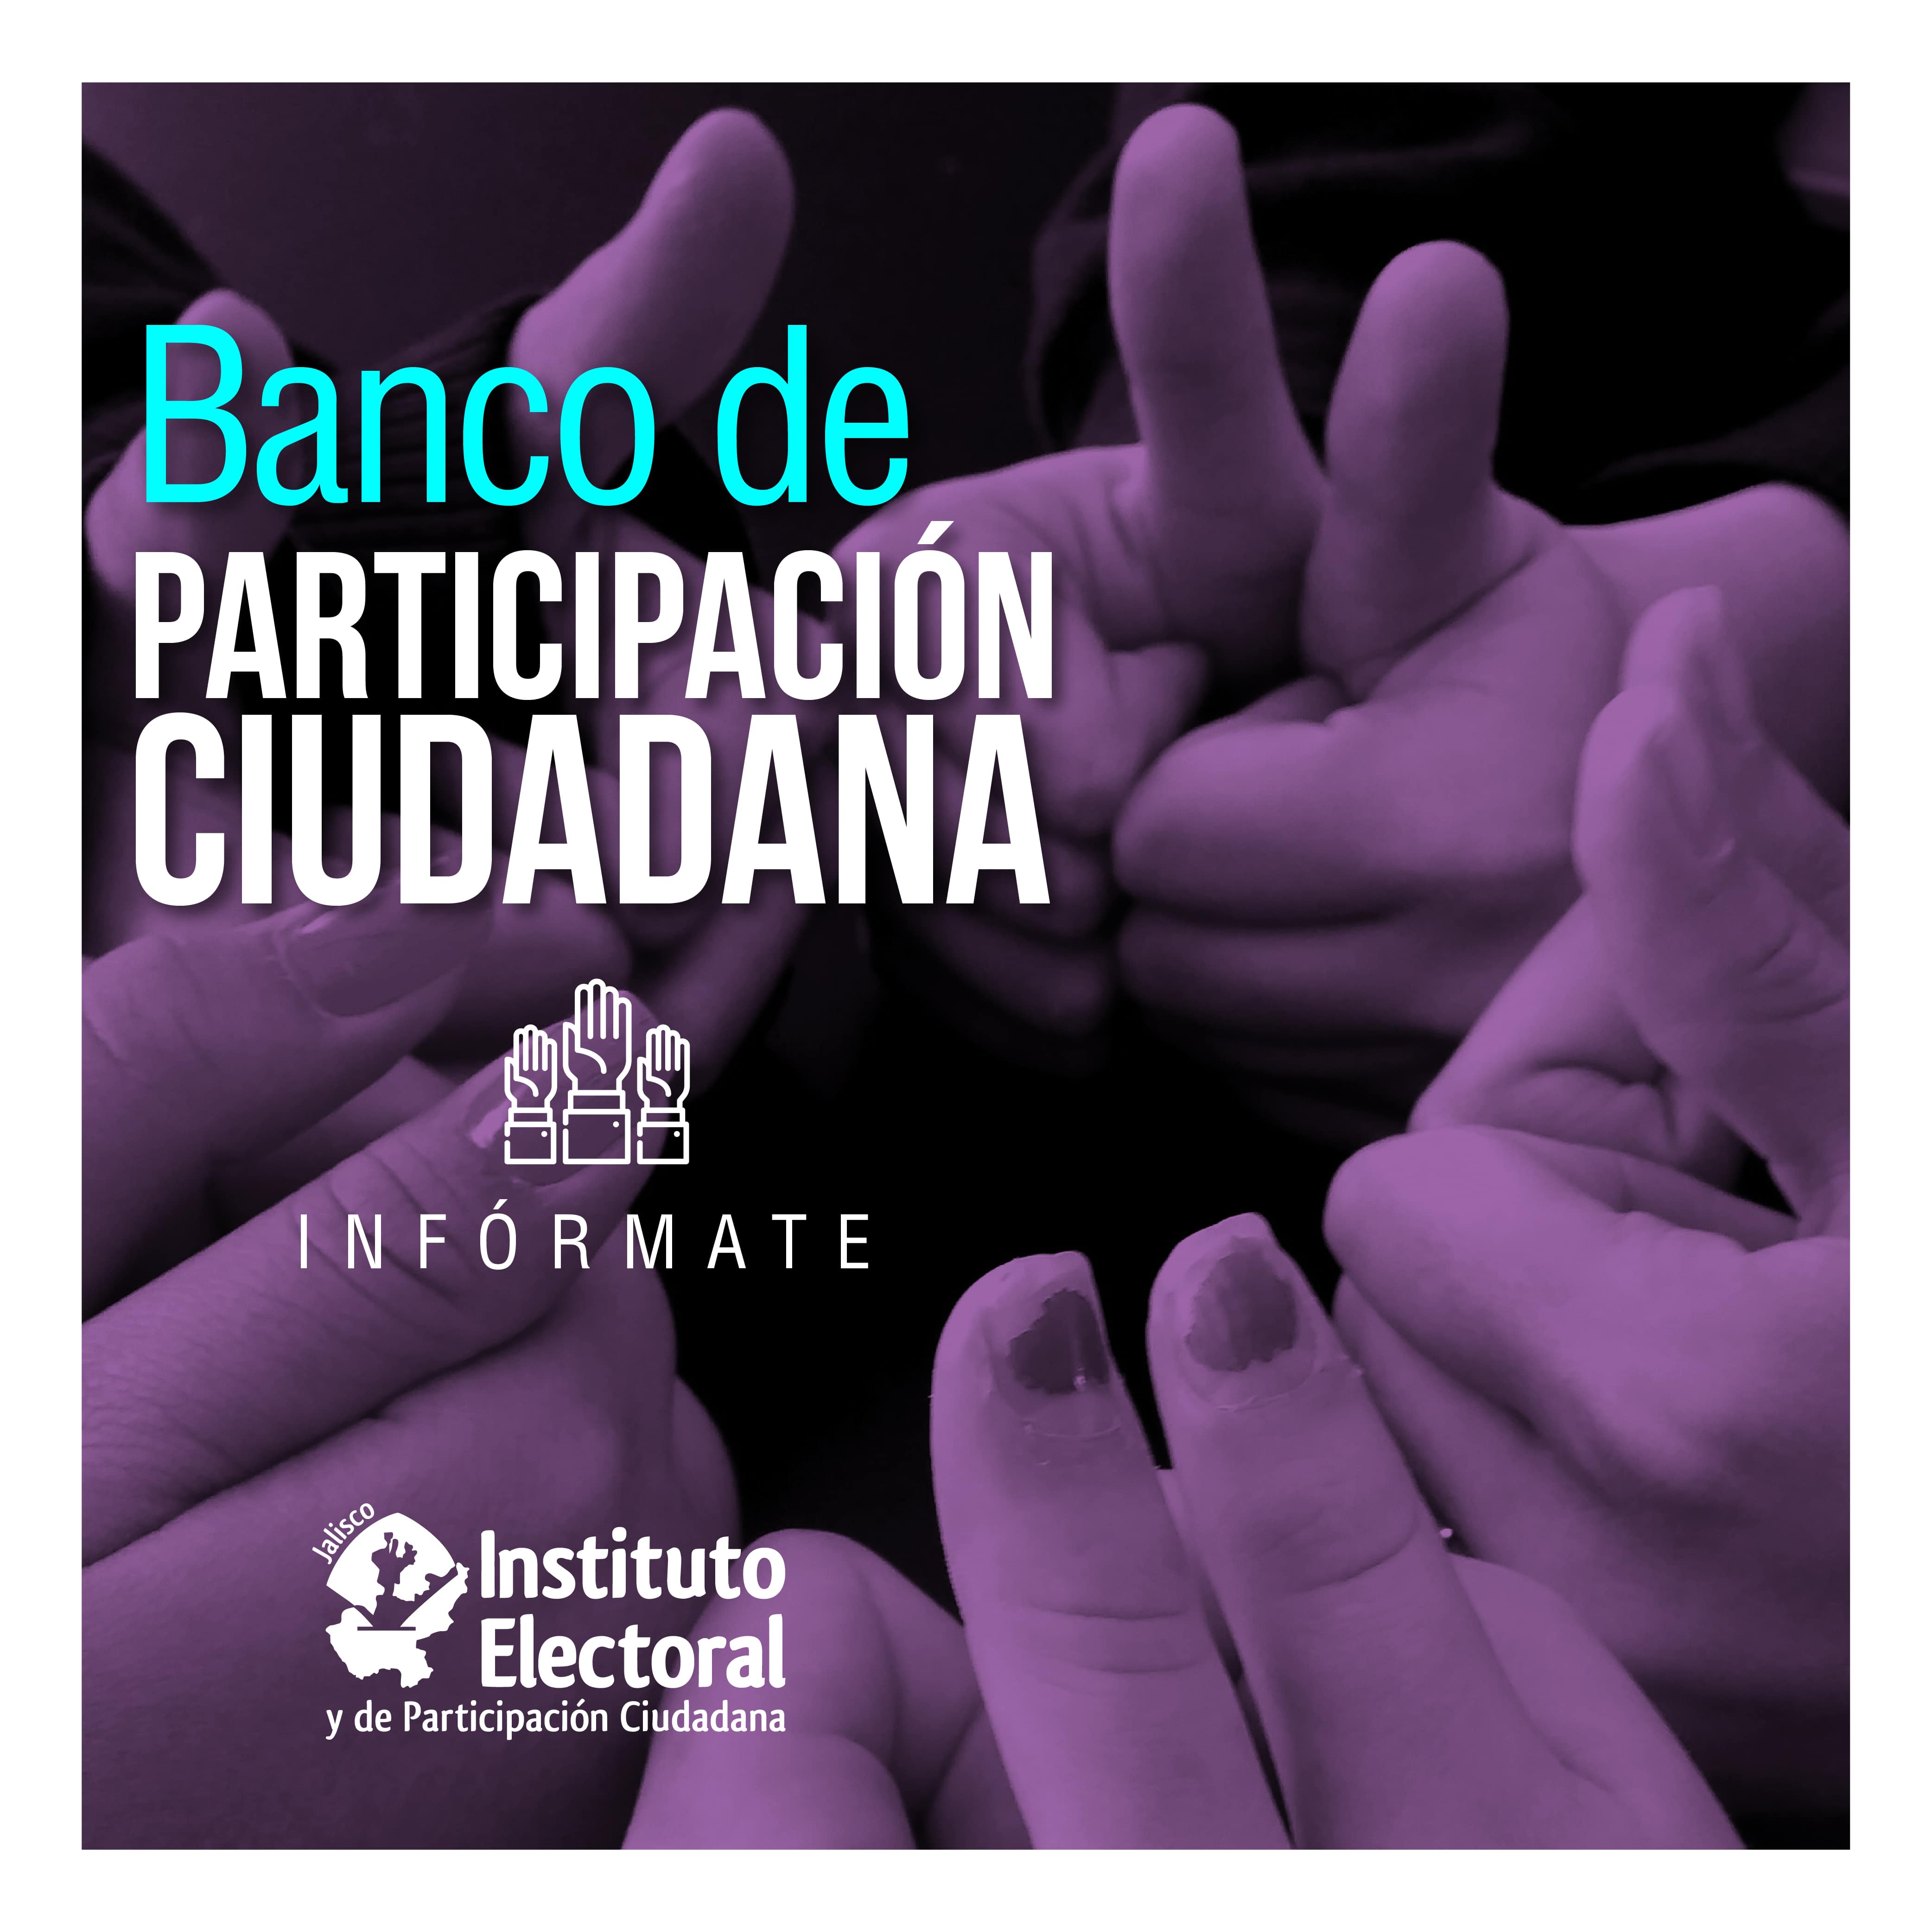 Banco de Participación Ciudadana